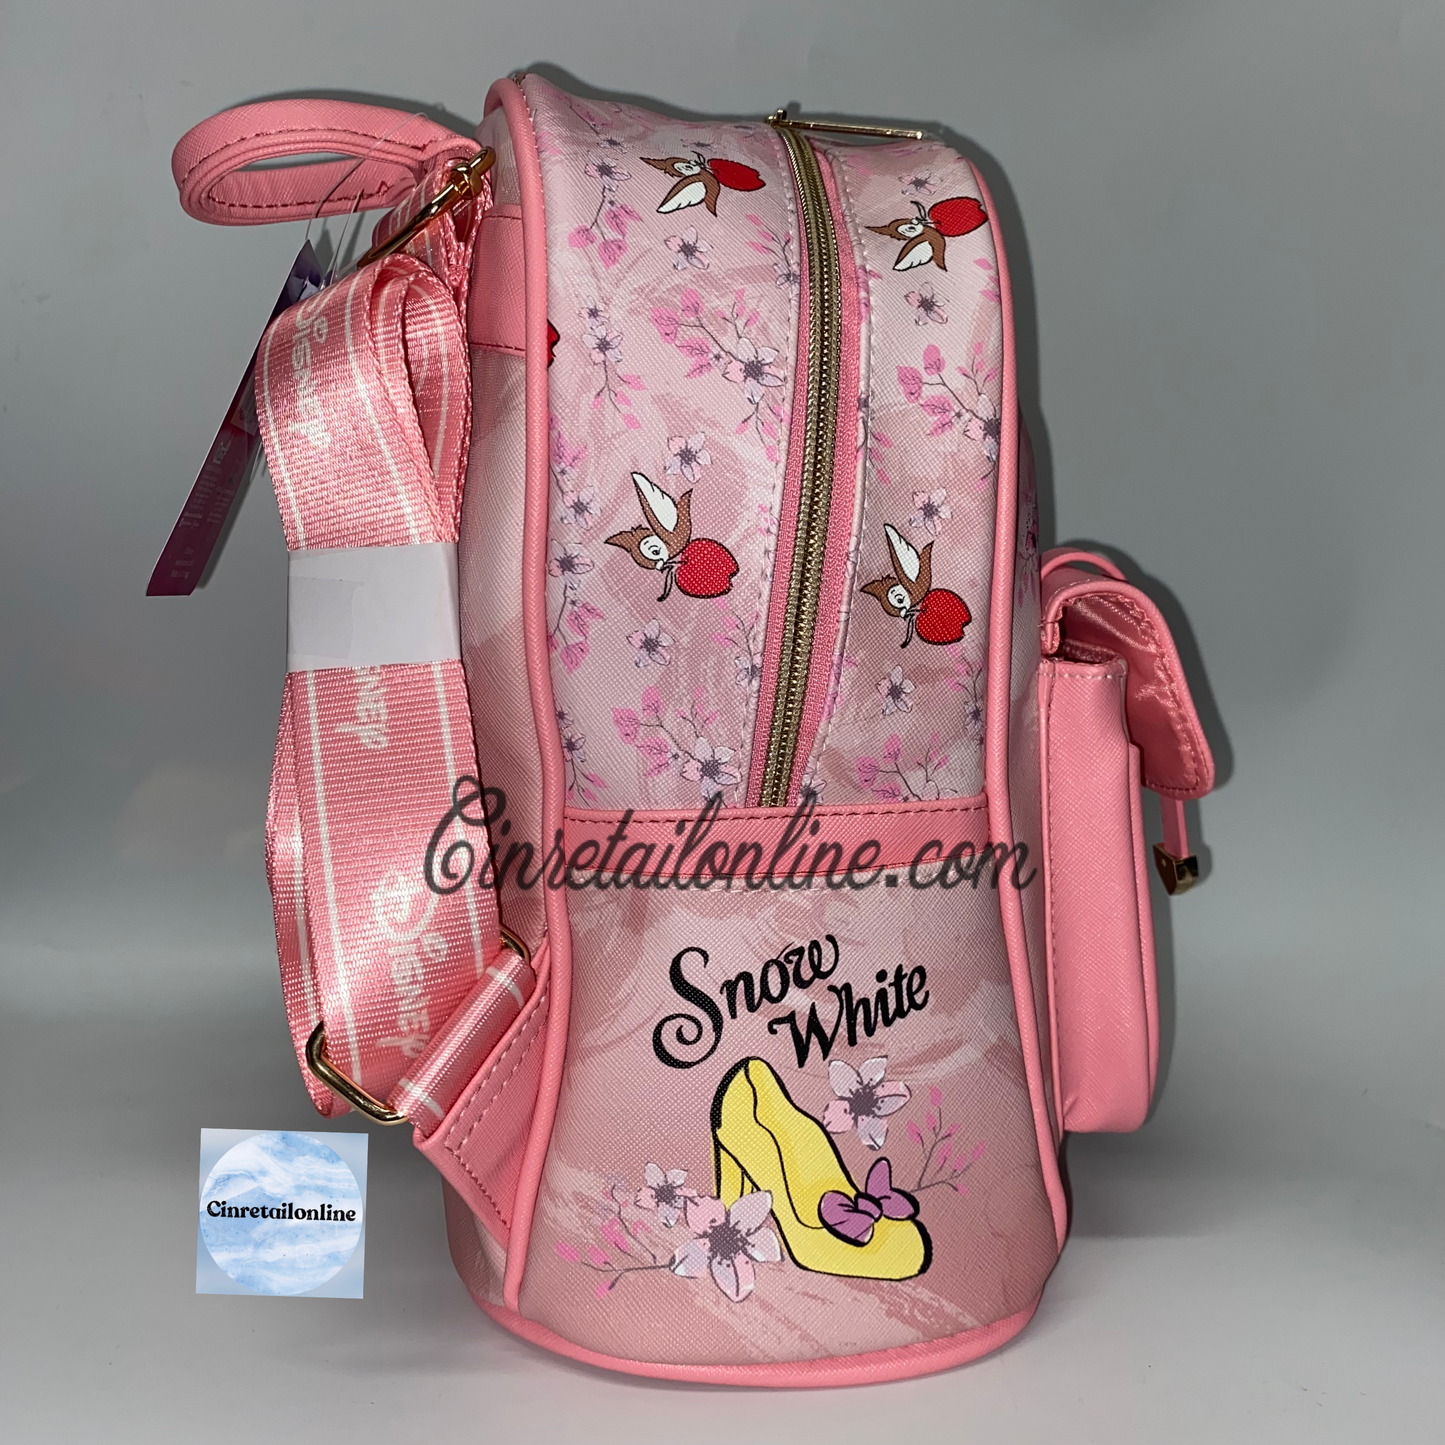 Snow White Disney backpack